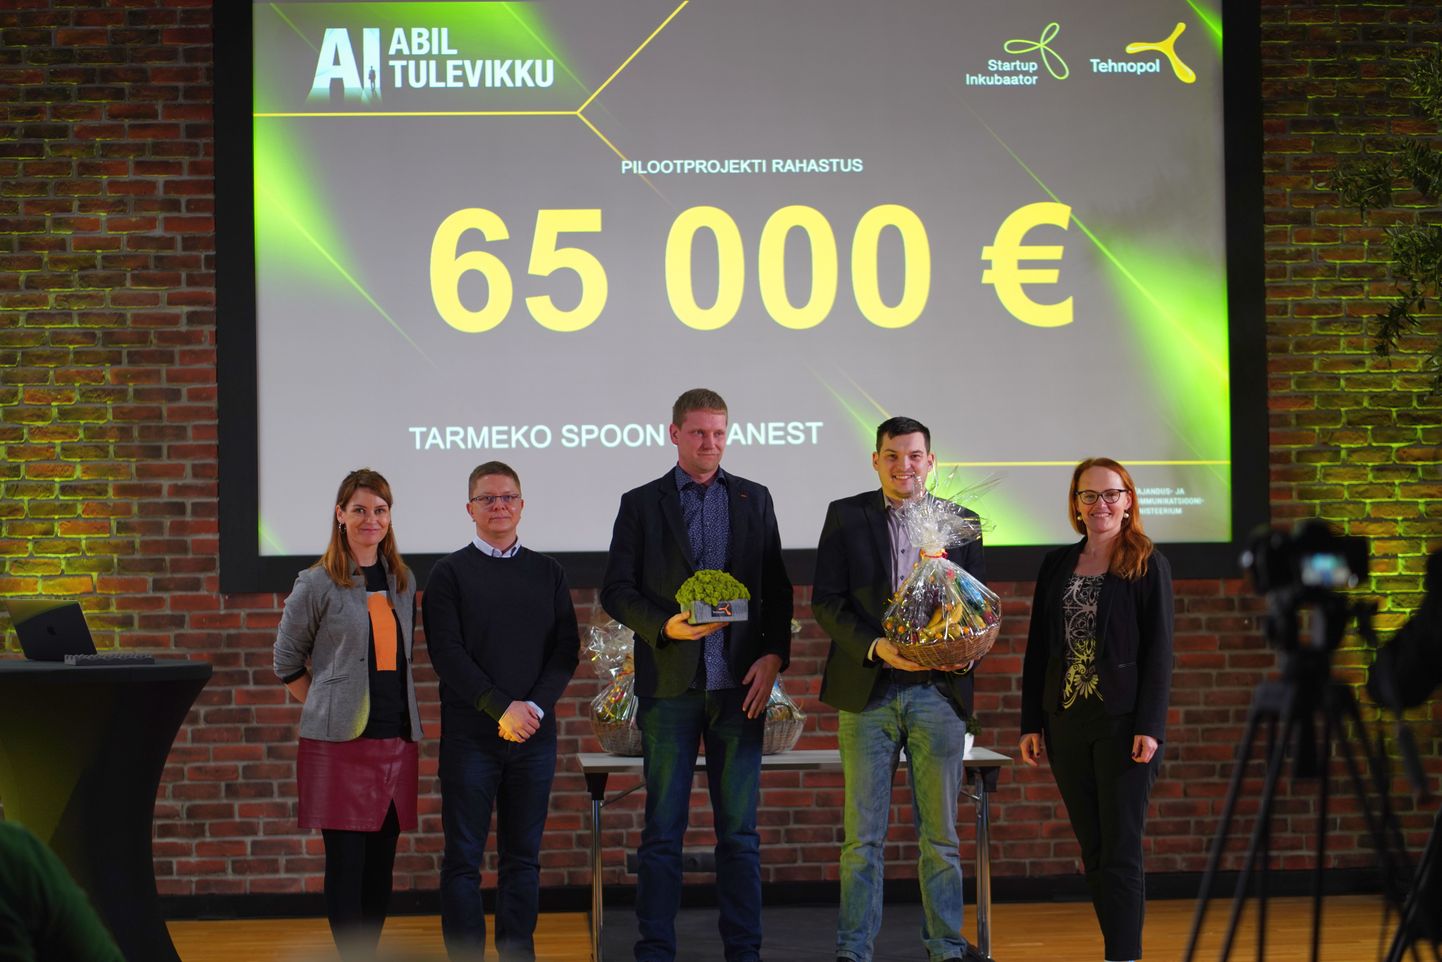 Tehnopoli korraldatud AI arendusmaratoni võitjad: Tarmeko Spoon ja Leanest.